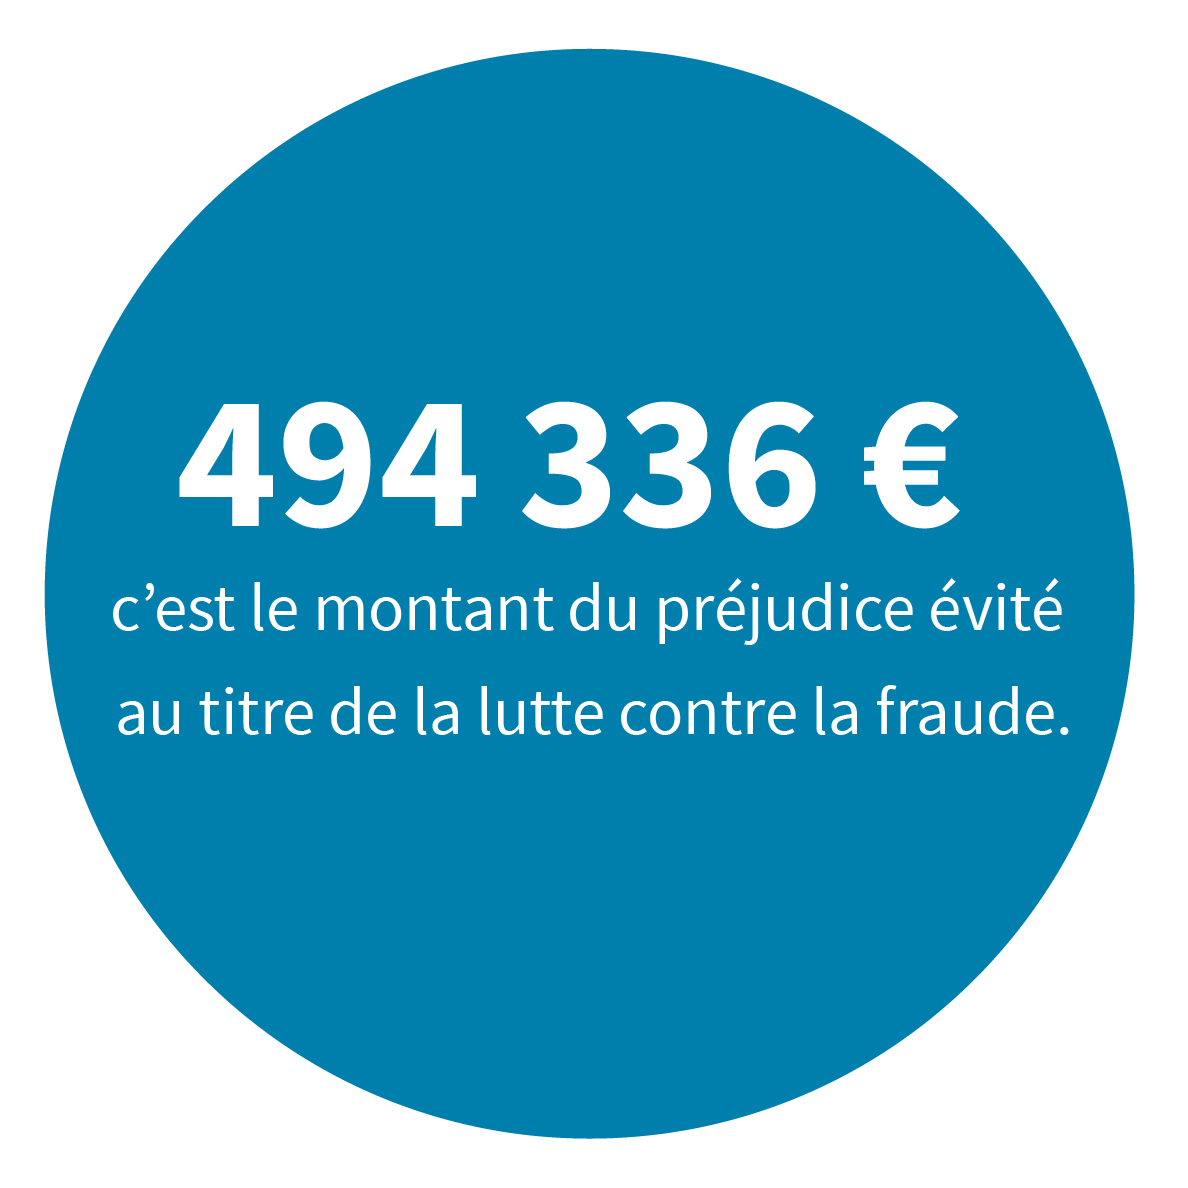 494 336 € c’est le montant du préjudice évité au titre de la lutte contre la fraude.